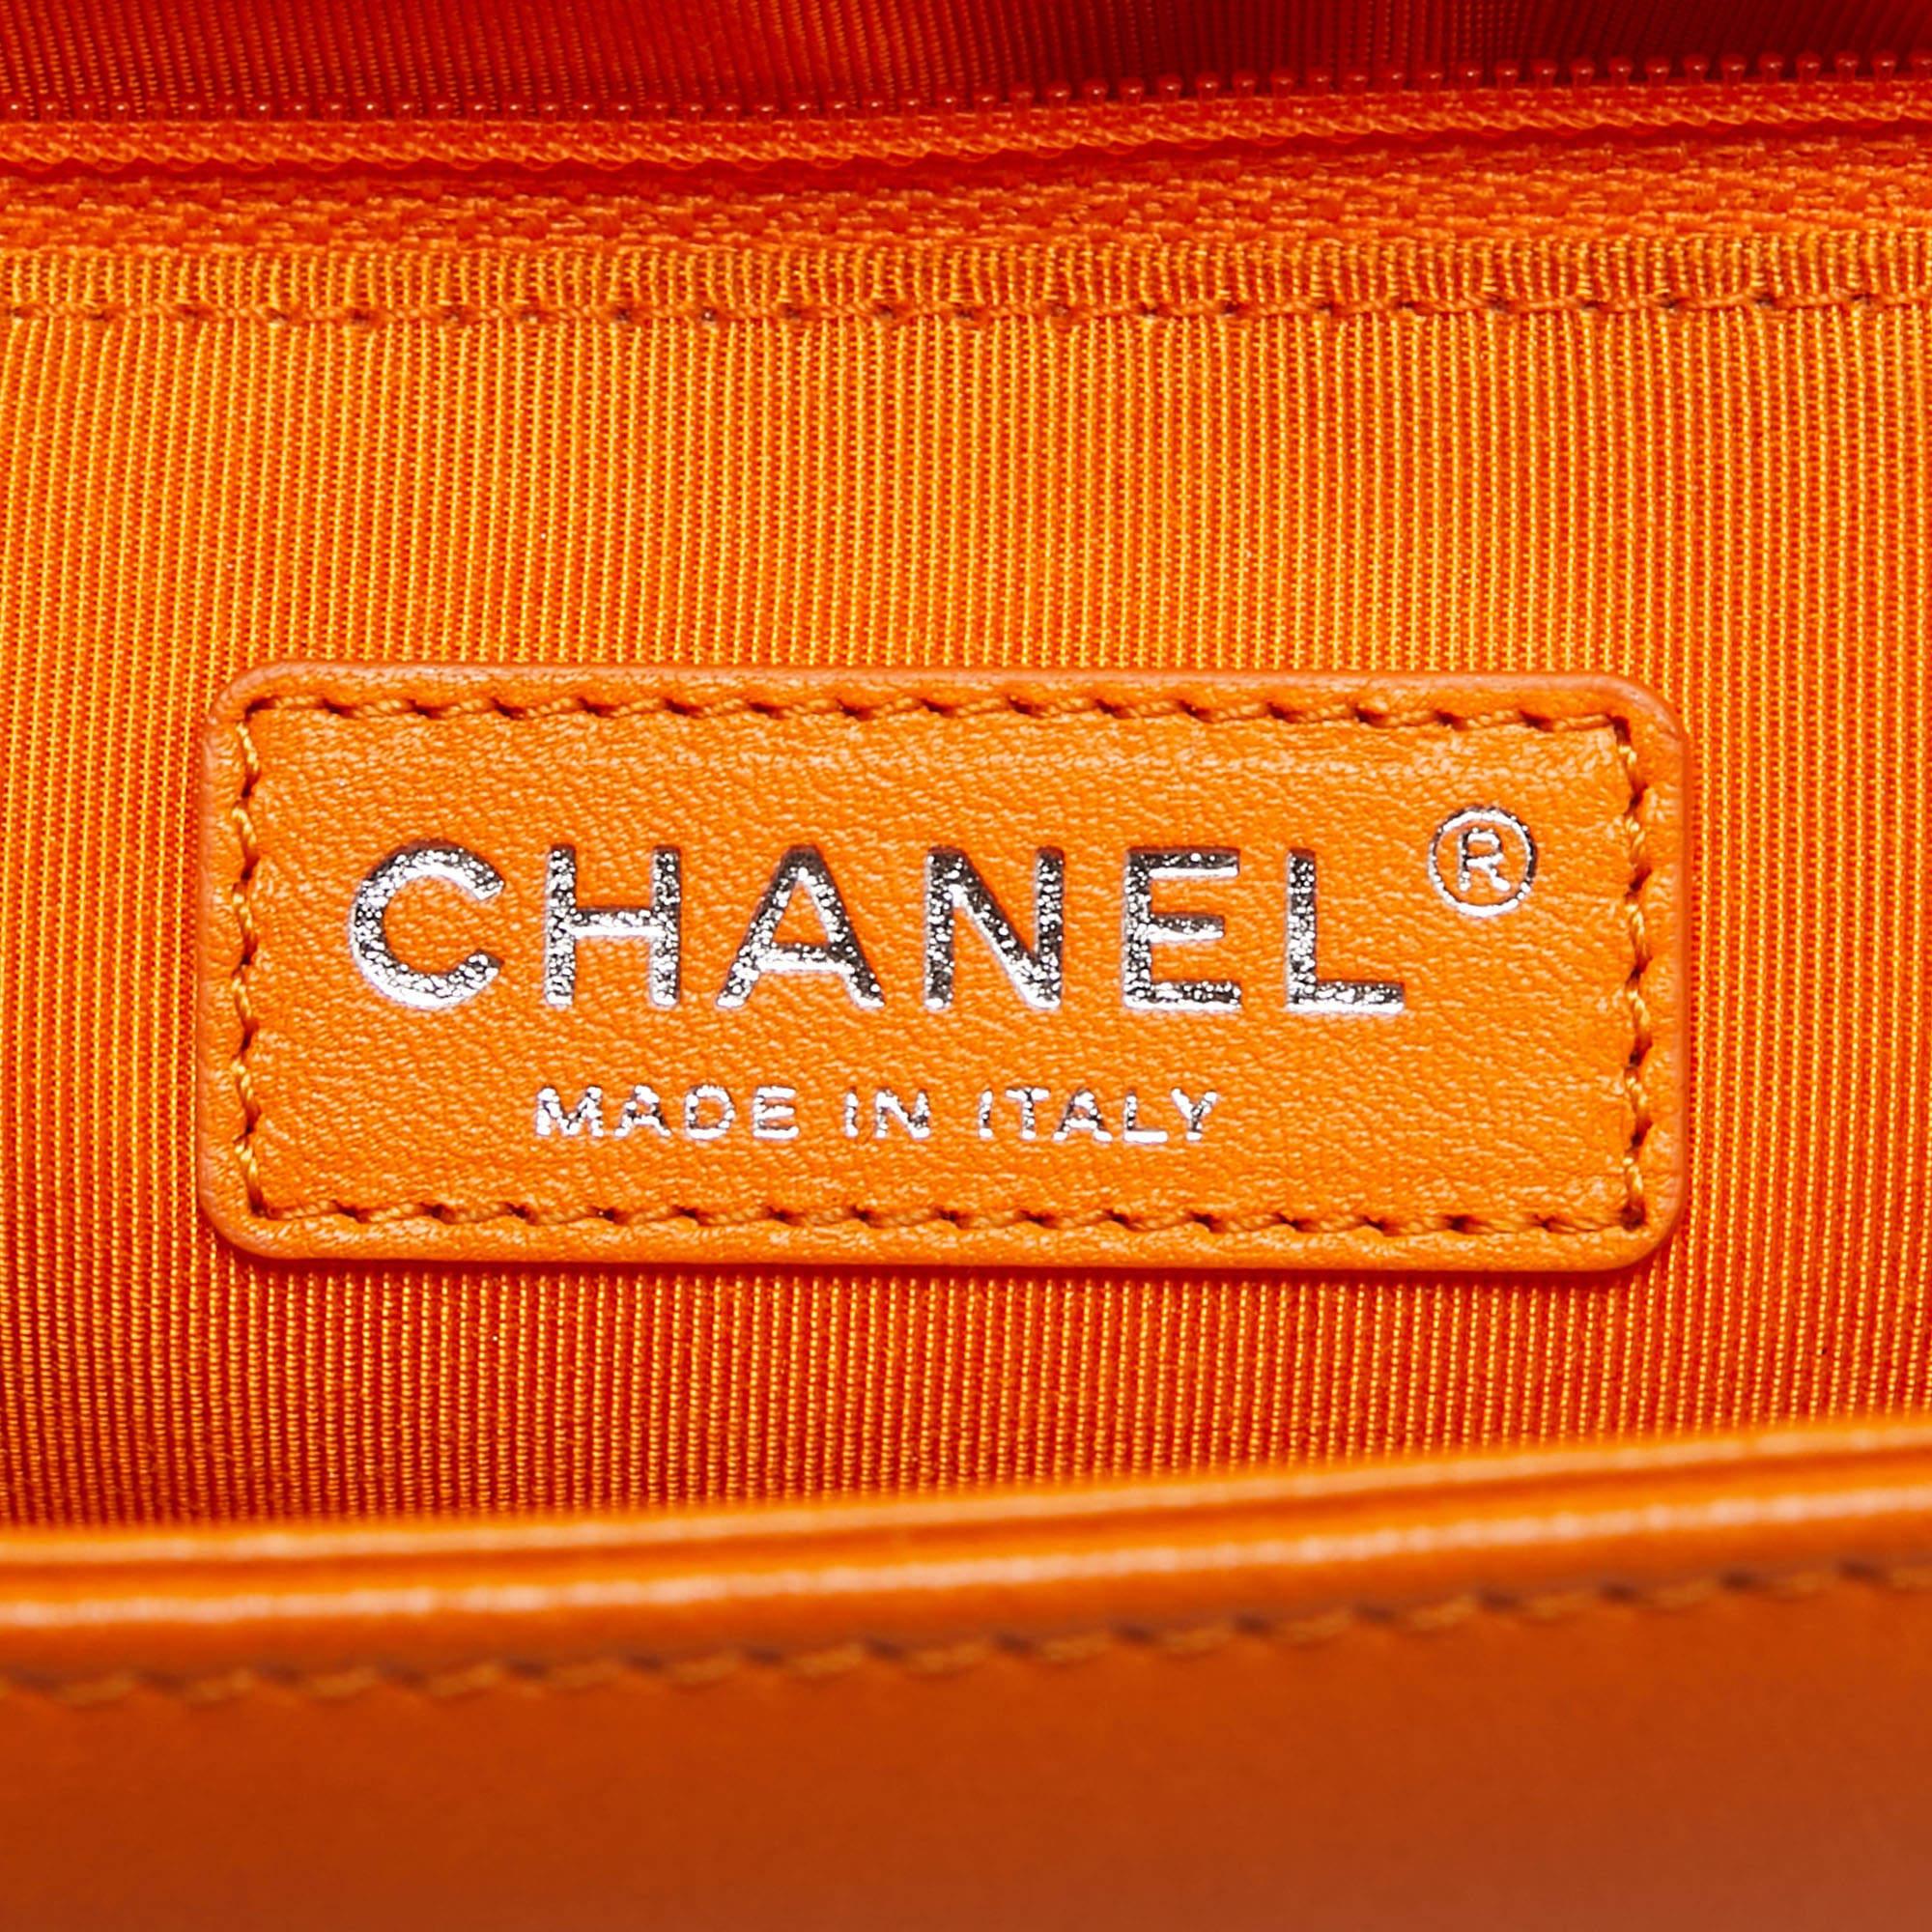 Chanel, sac Boy moyen neuf en cuir matelassé orange 6